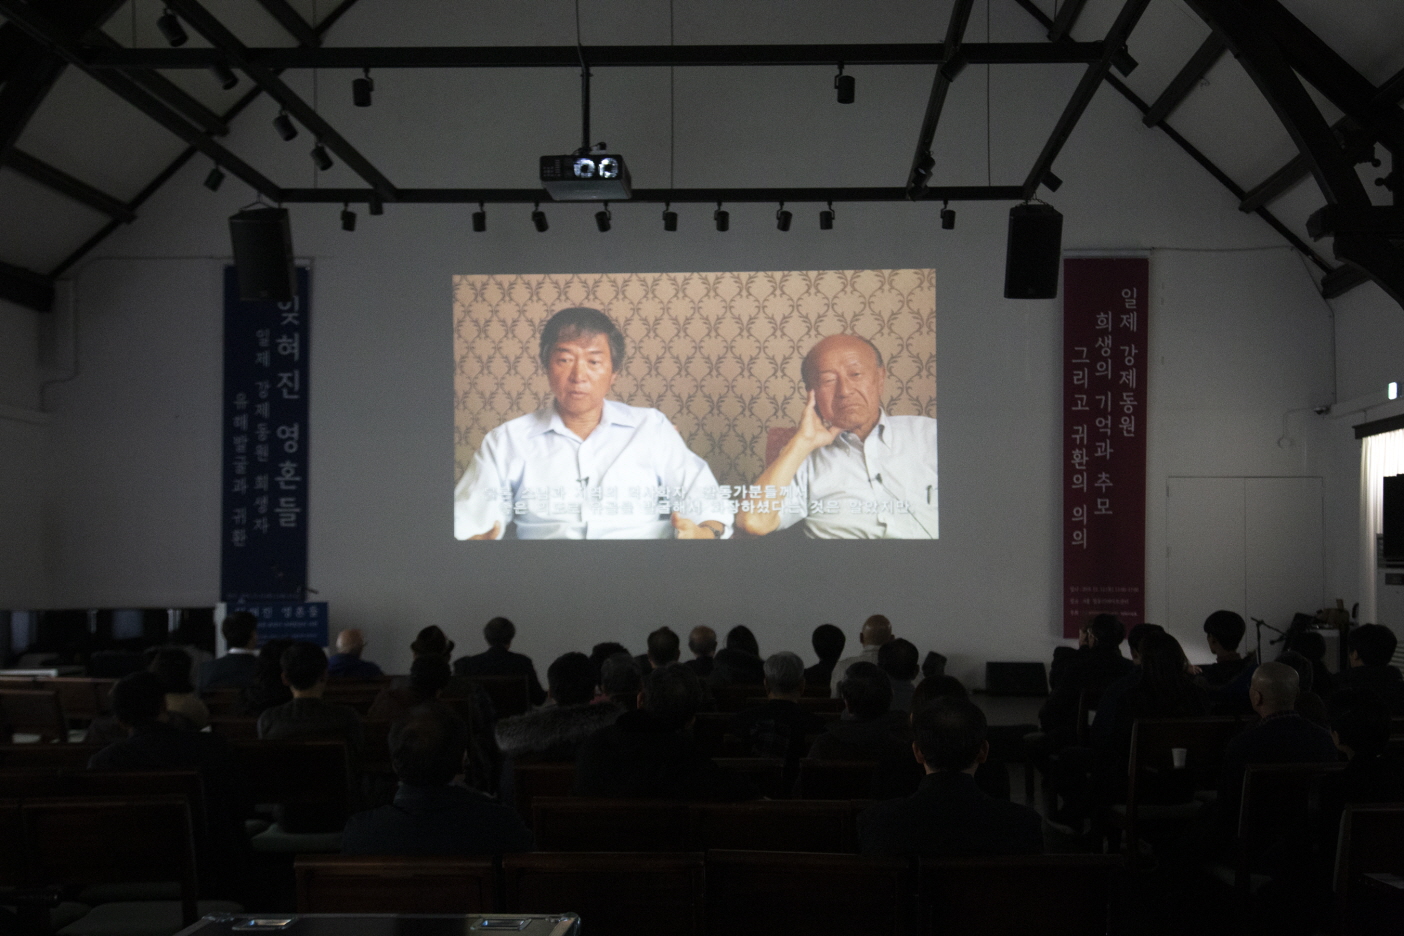 일본 홋카이도 지역으로 강제동원되어 희생된 희생자의 유해발굴과 귀환 과정을 담은 다큐멘터리 데이비드 플래스의 ‘길고 긴 잠’상영회